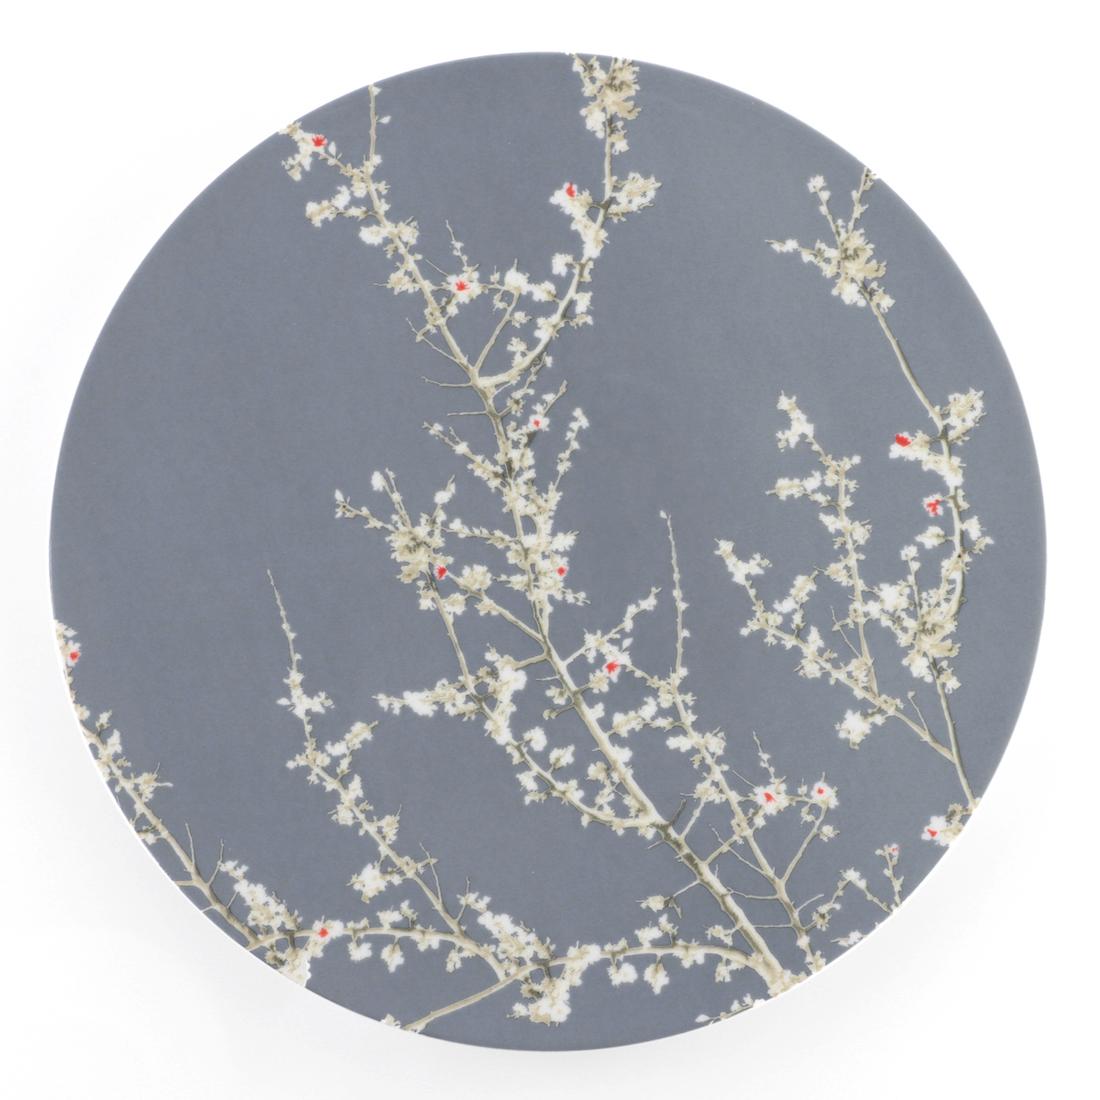 Collezione Wallpaper, piatto Sakura by A. Castrignano - Foto: Weissestal